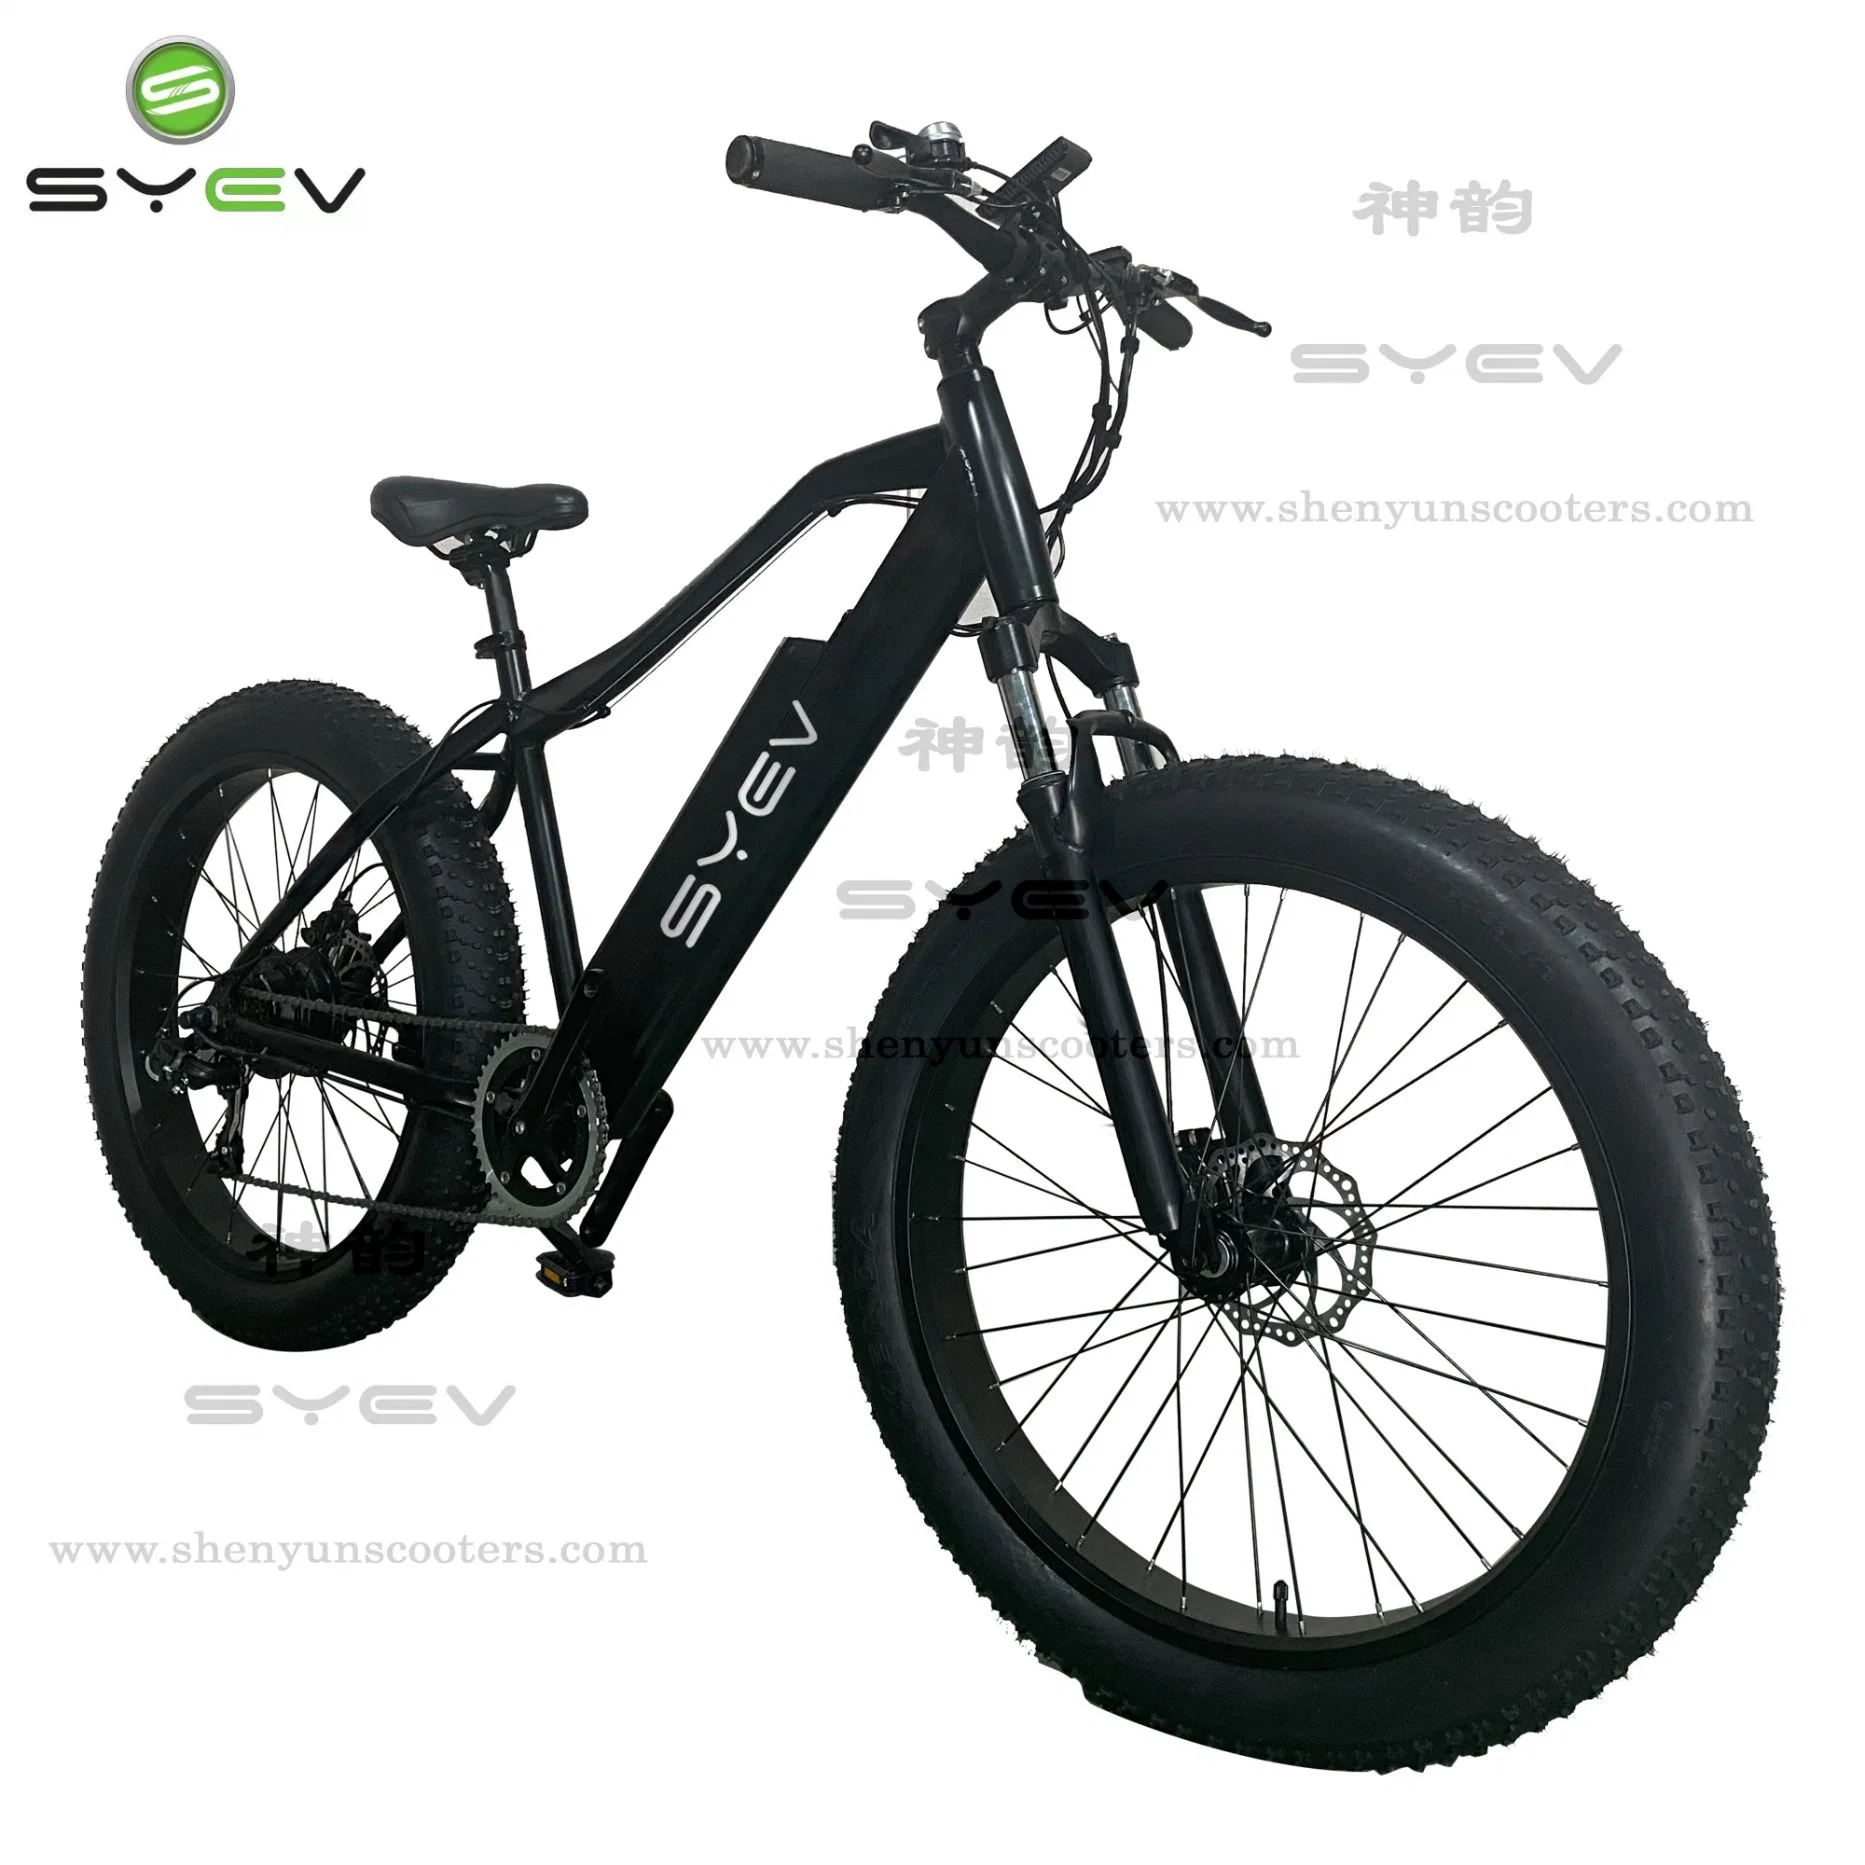 Юкси на заводе Shenyun новые высокопроизводительные 26" жир шины из алюминиевого сплава горных велосипедов с электроприводом для молодежи